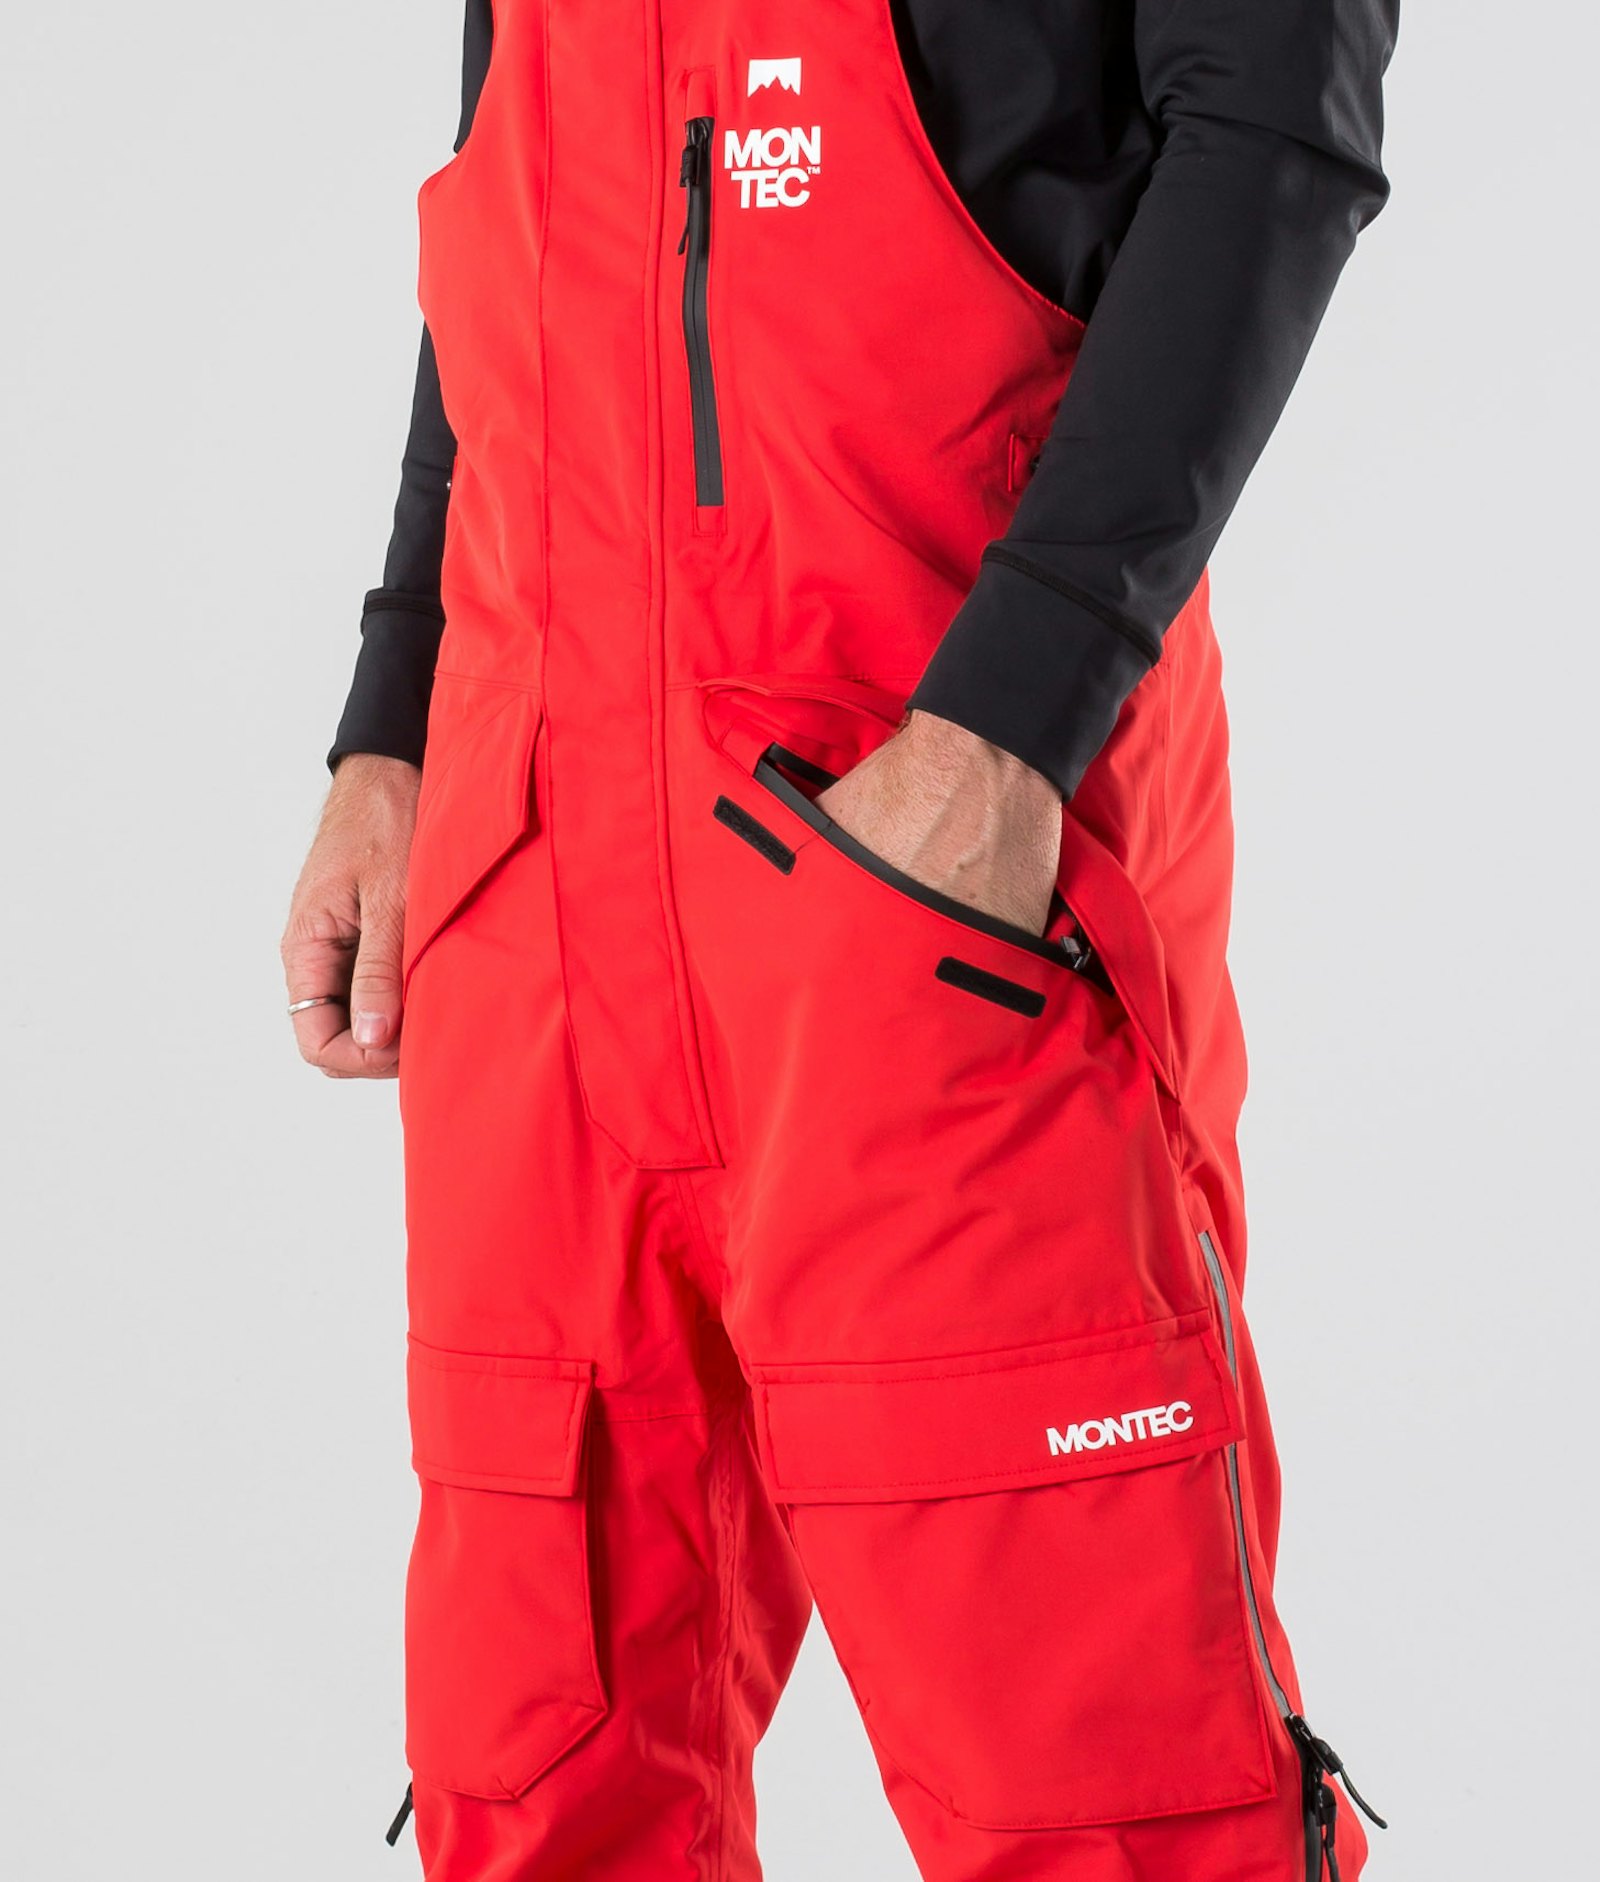 Fawk 2019 Snowboardhose Herren Red